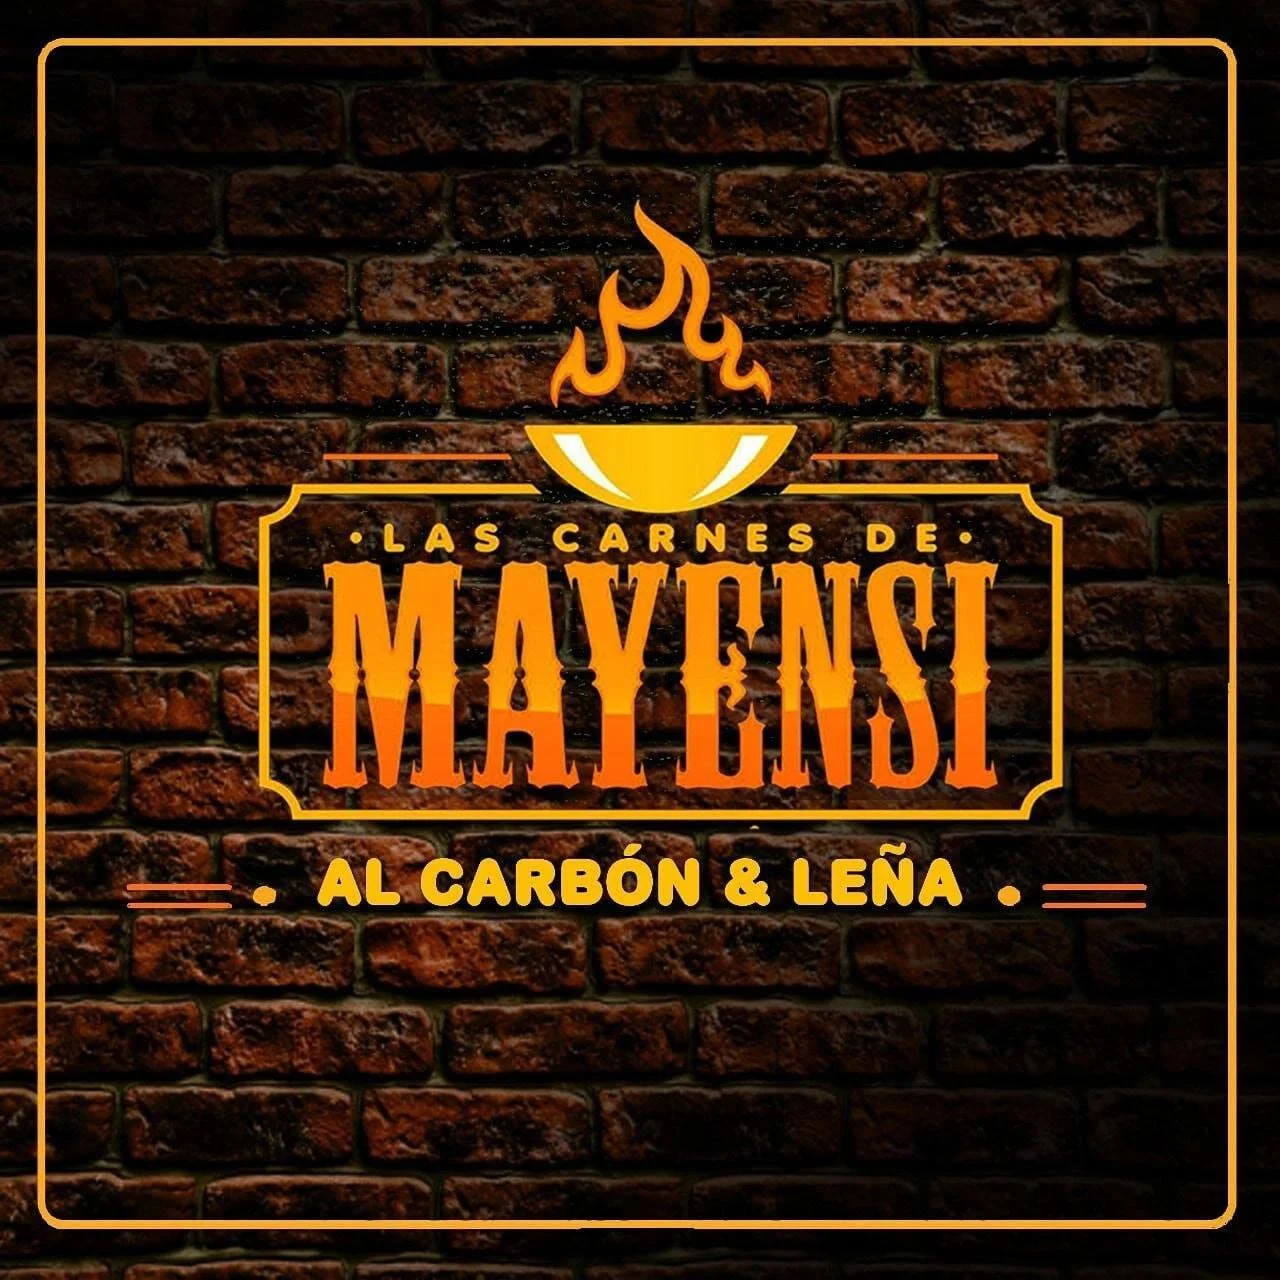 Las Carnes de Mayensi Cuenca-4361